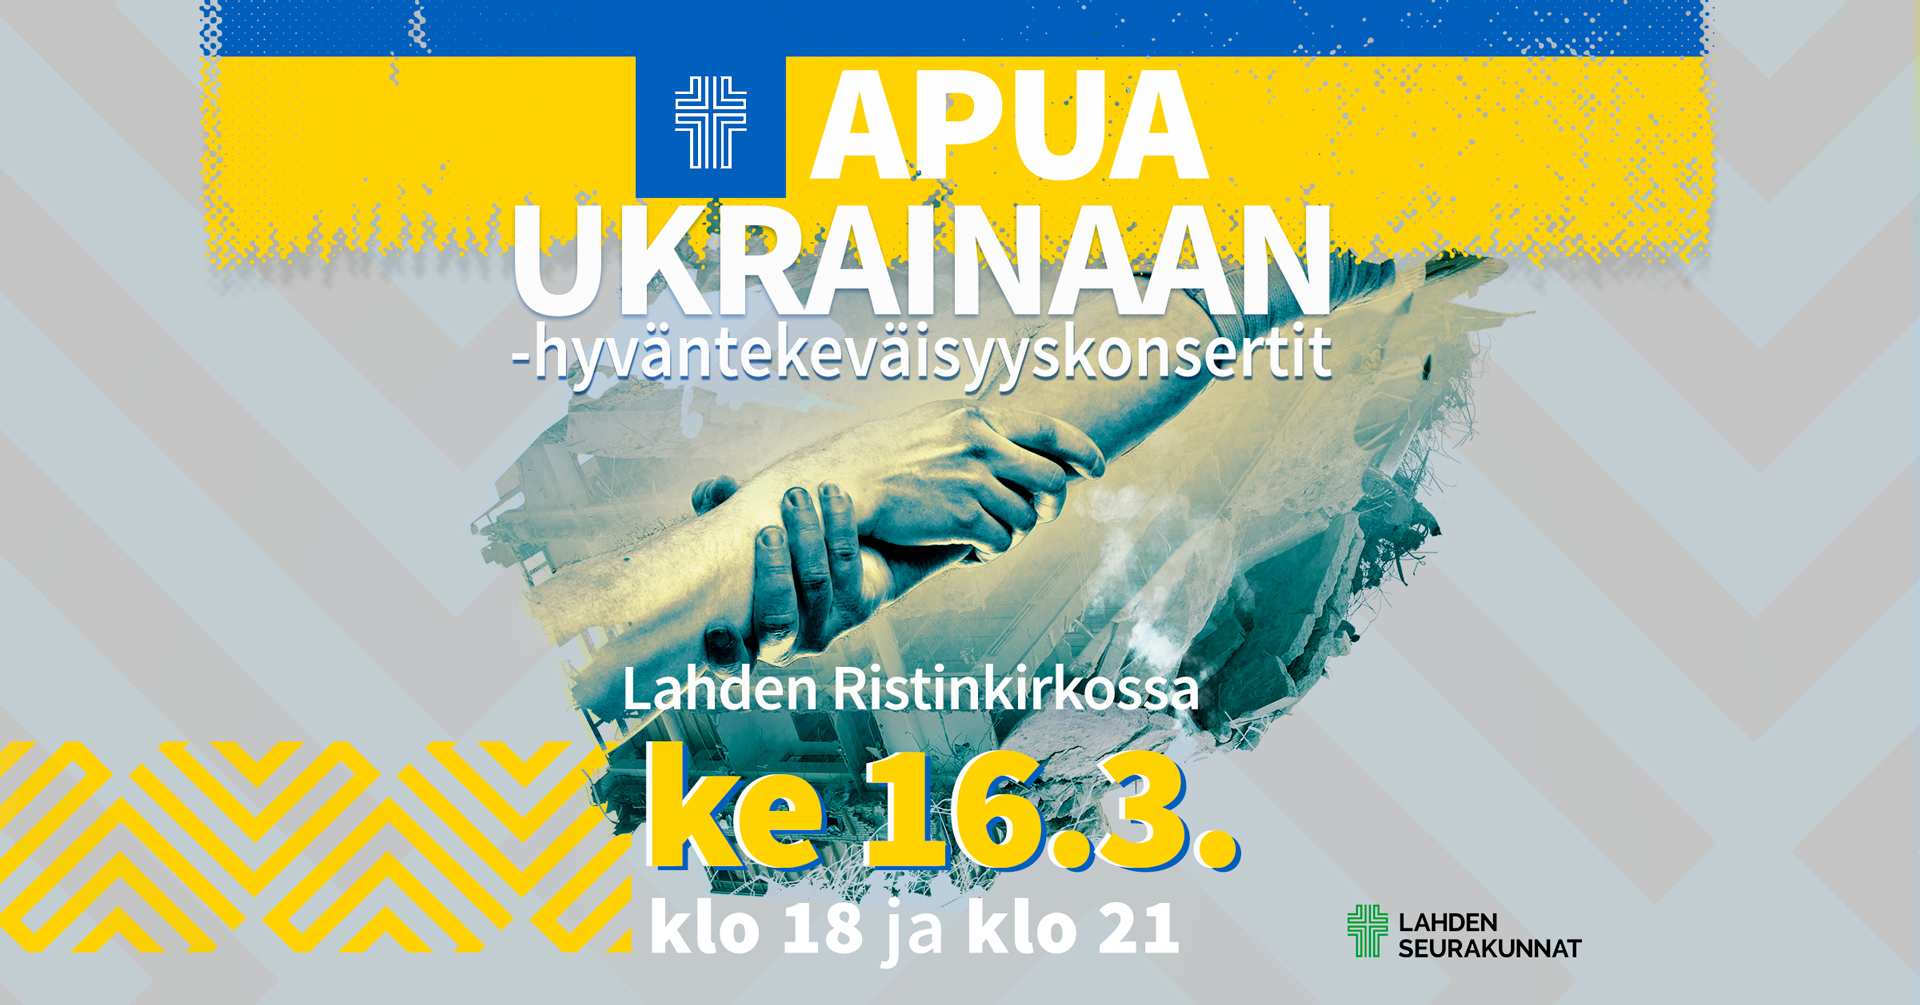 Kuvassa on konserttimainos Apua Ukrainaan -konsertista 16.3.2022.